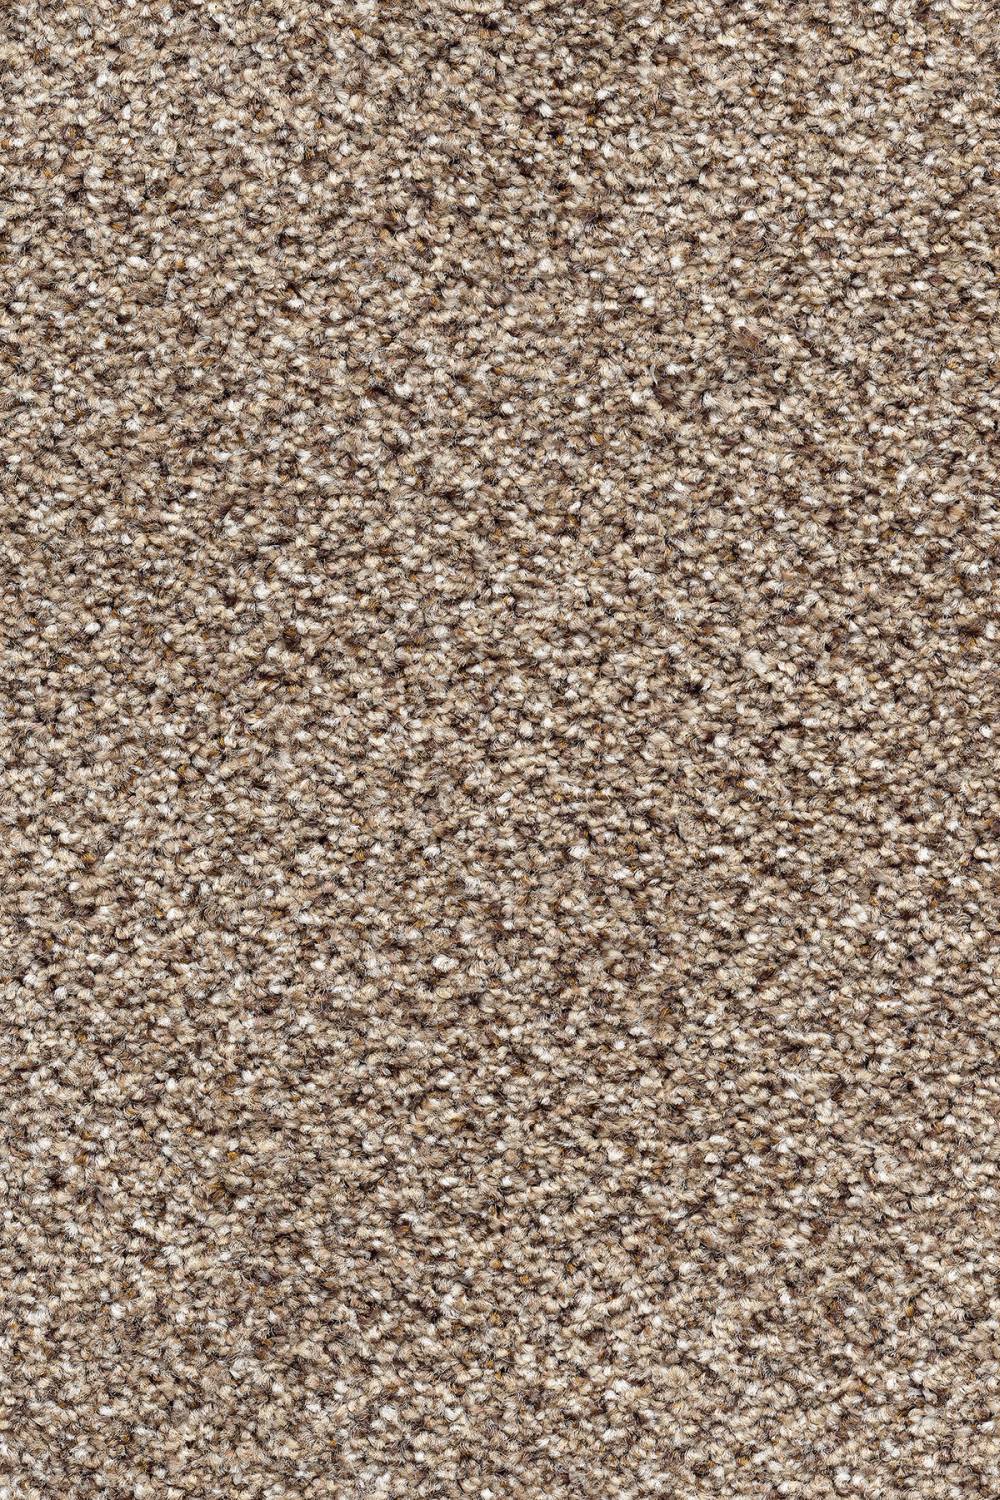 Orkney Tweed Carpet - Eddleston 35